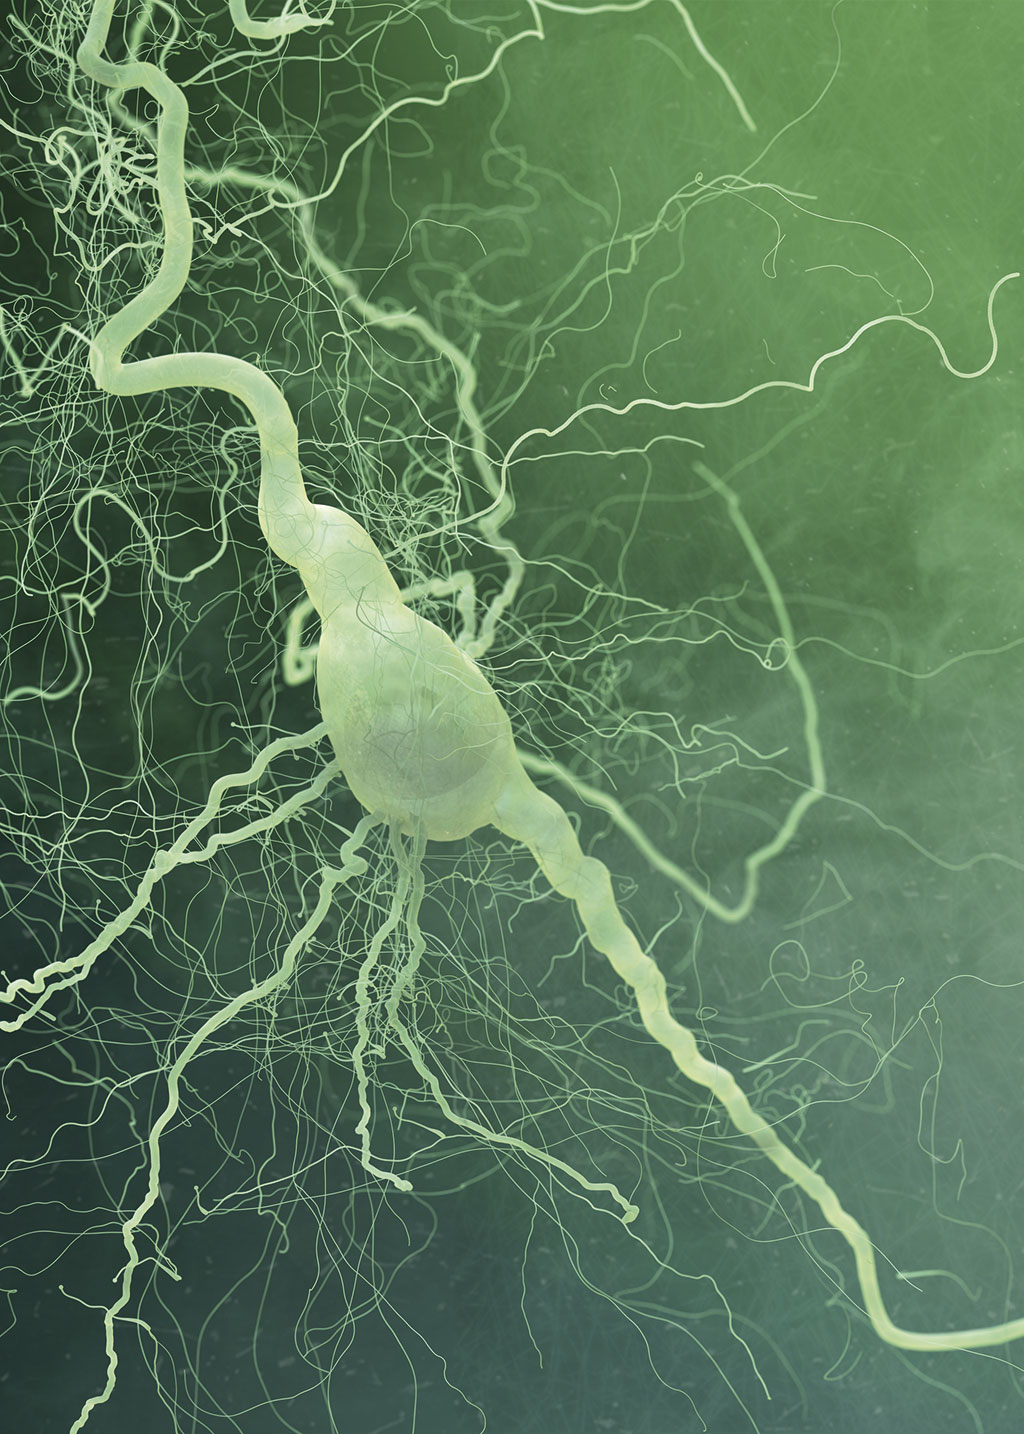 neuron-detail | illustration ©adergebroed